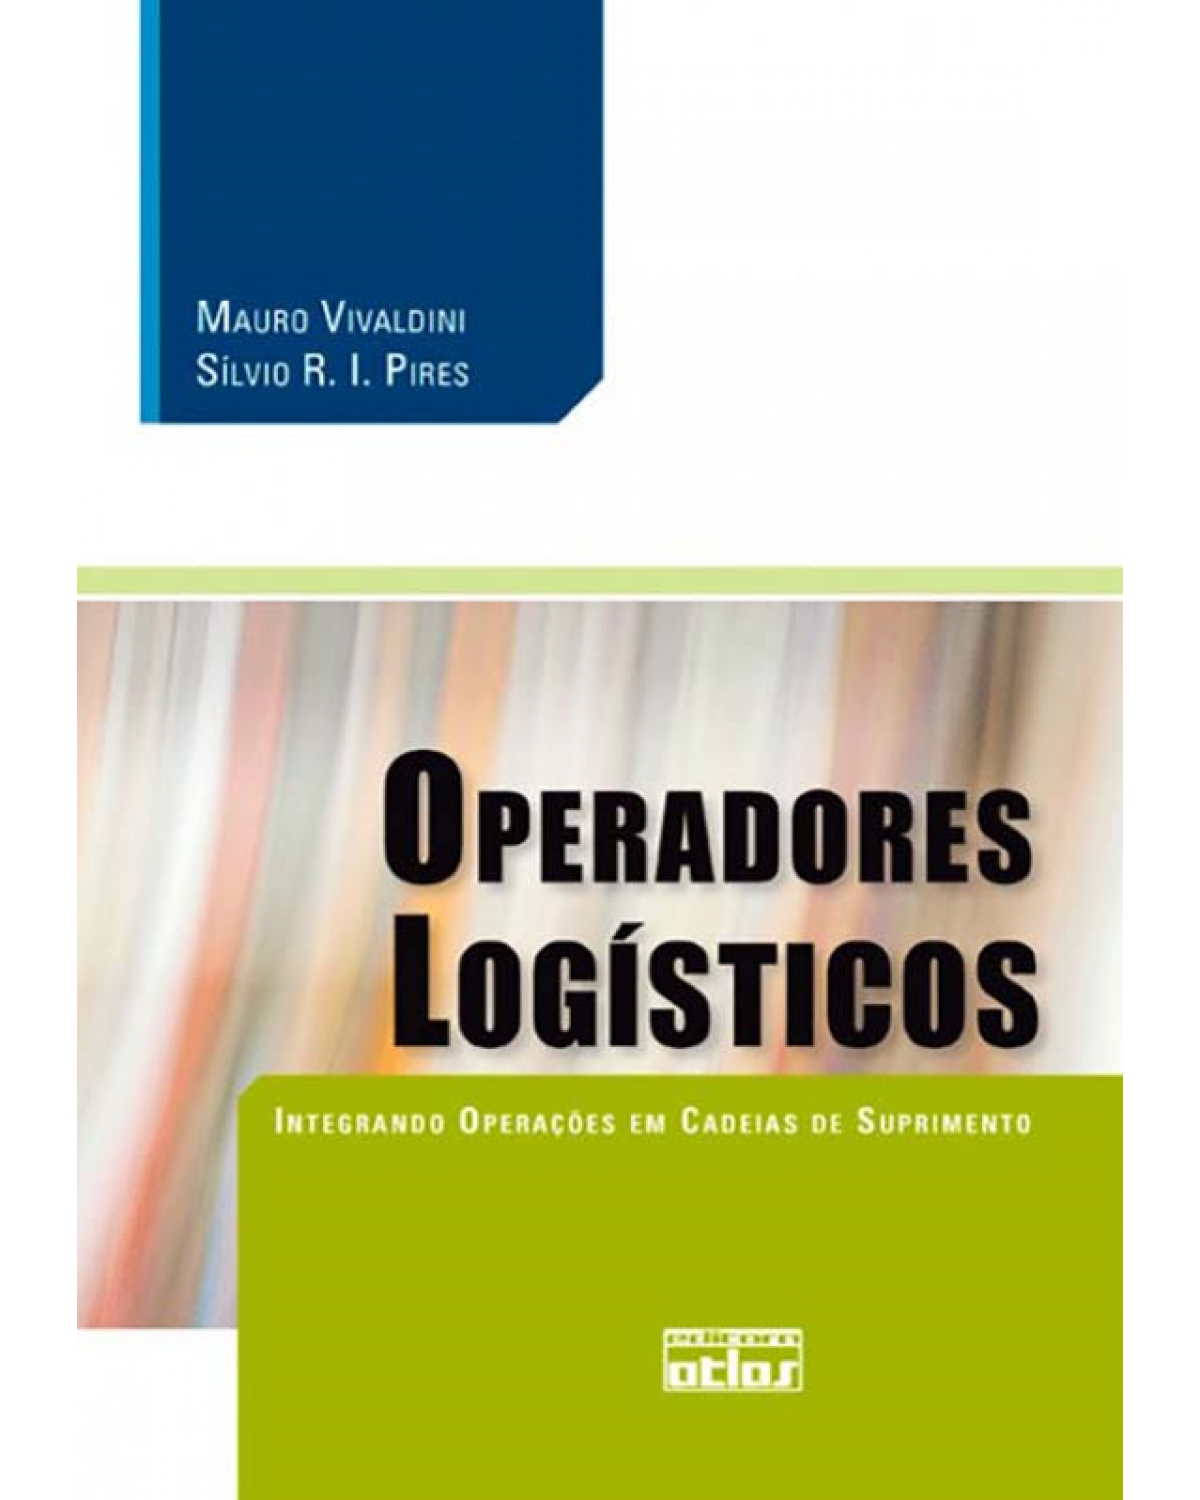 Operadores logísticos - Integrando operações em cadeias de suprimento - 1ª Edição | 2010